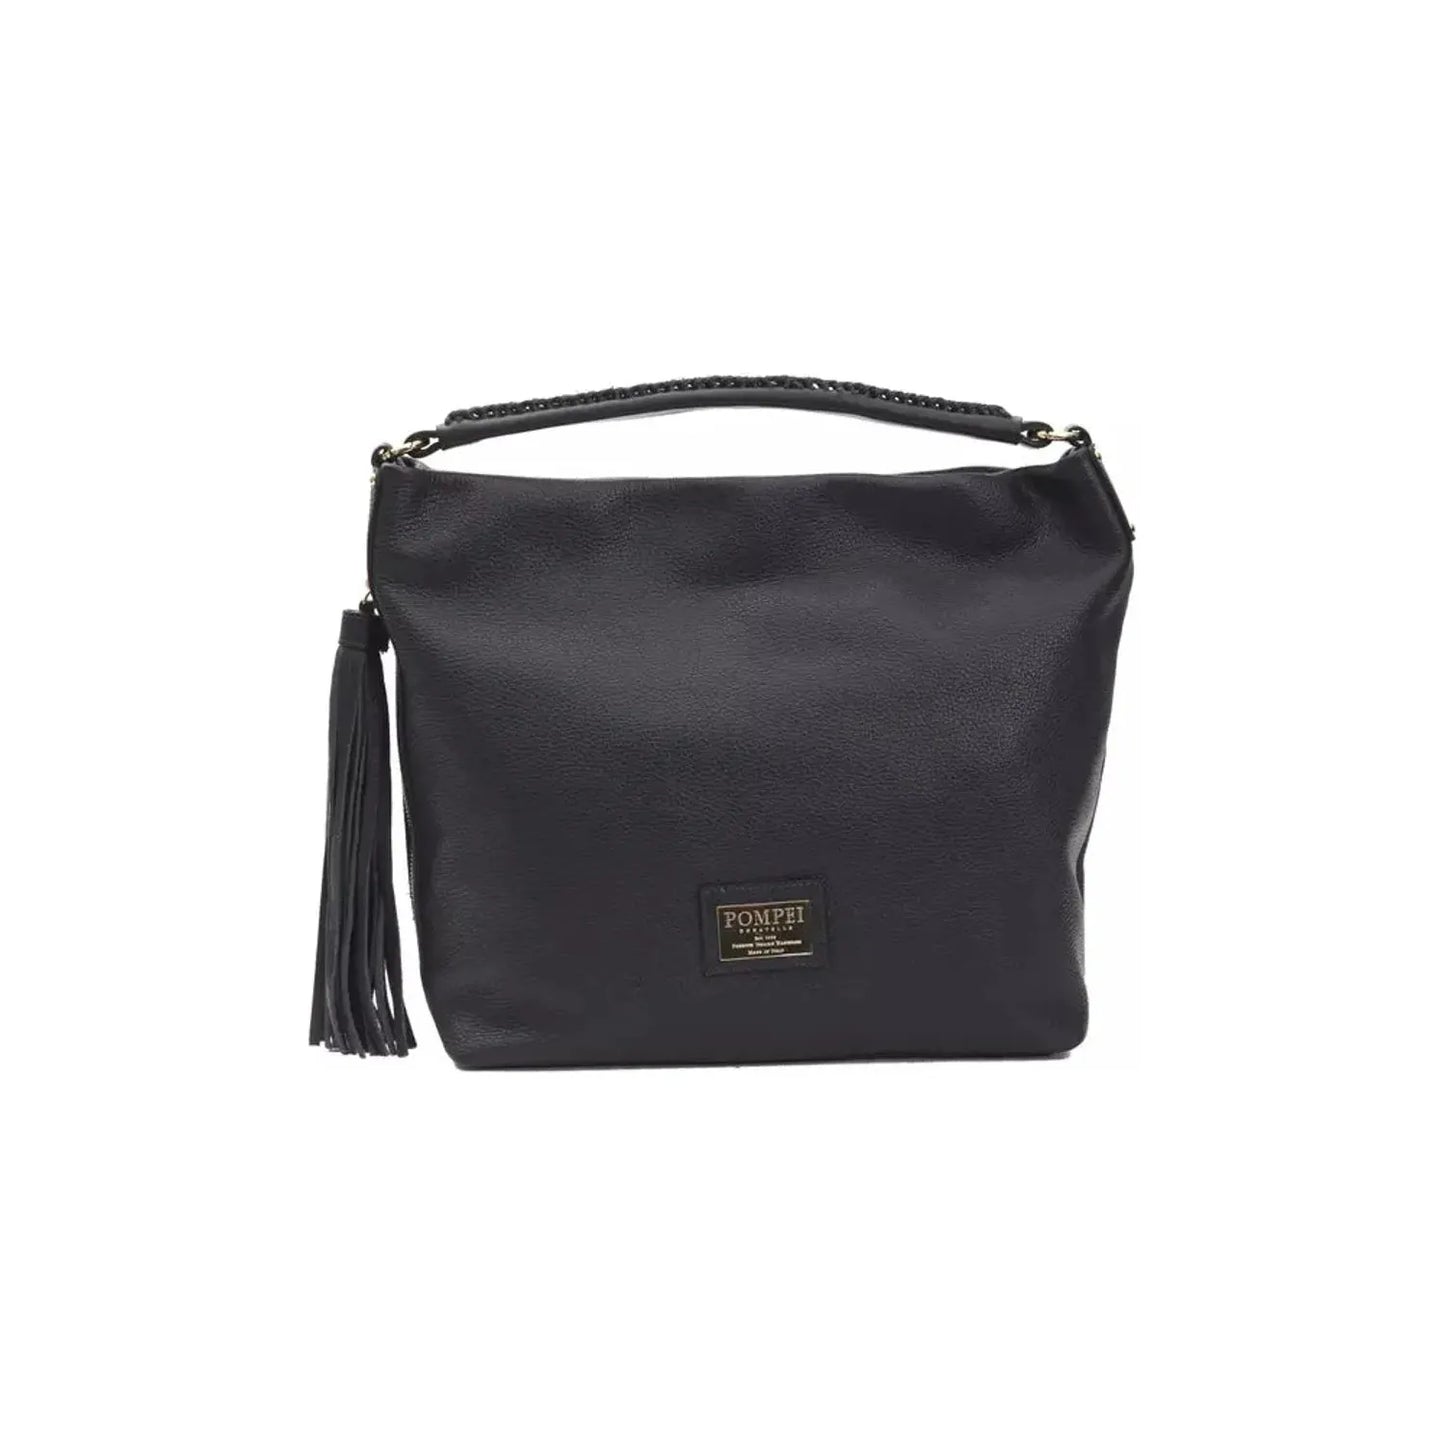 Pompei Donatella Chic Gray Leather Shoulder Bag with Logo Detail WOMAN SHOULDER BAGS gray-leather-shoulder-bag-3